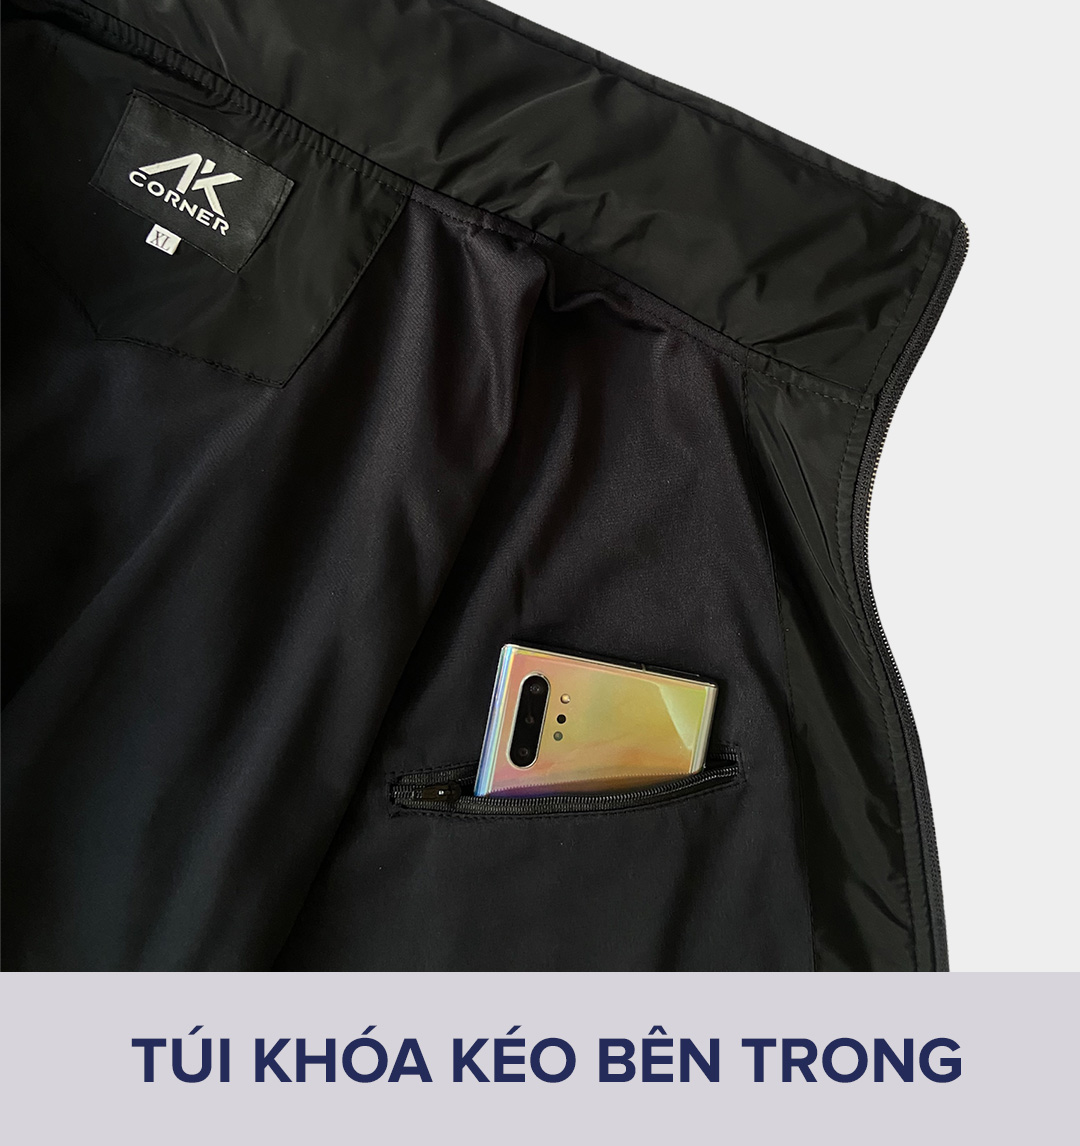 Áo khoác nam cao cấp AK Corner vải Xi Nhật 2 lớp dày dặn, thiết kế giấu nón tiện lợi, có lớp cách nhiệt bên trong hút ẩm, chống gió bụi, chống nắng tốt